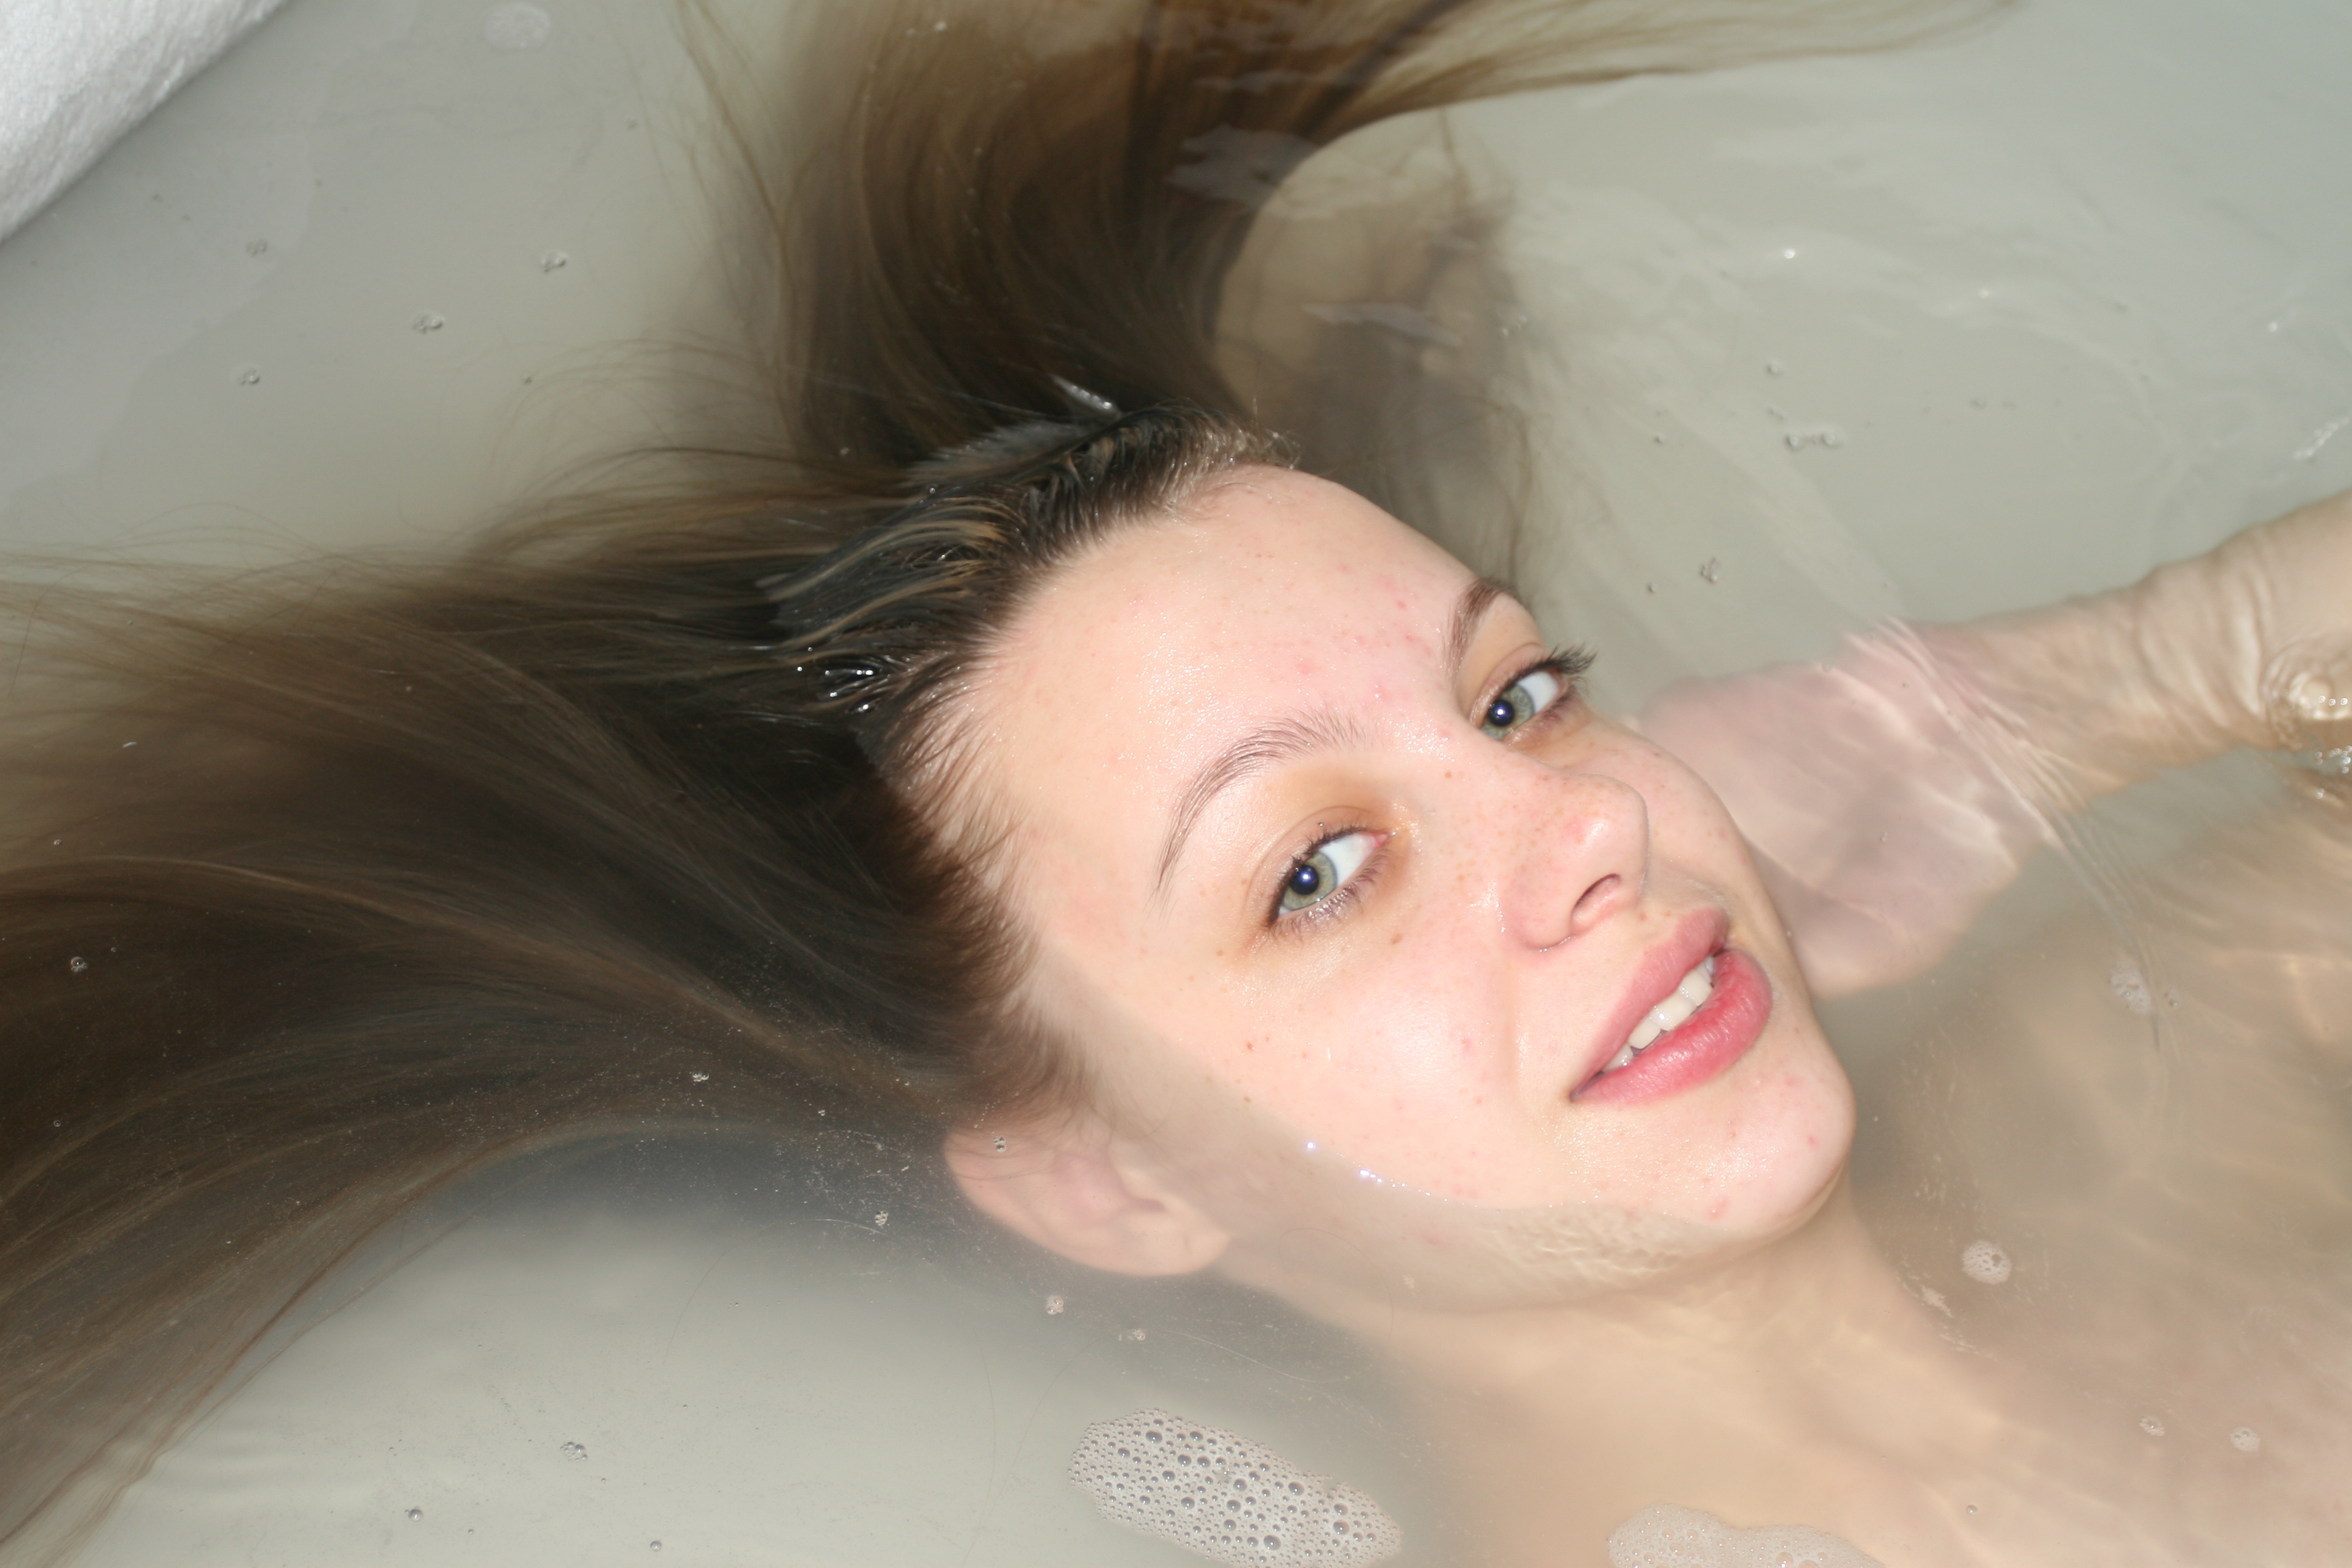 Hot teen babe takes a bath